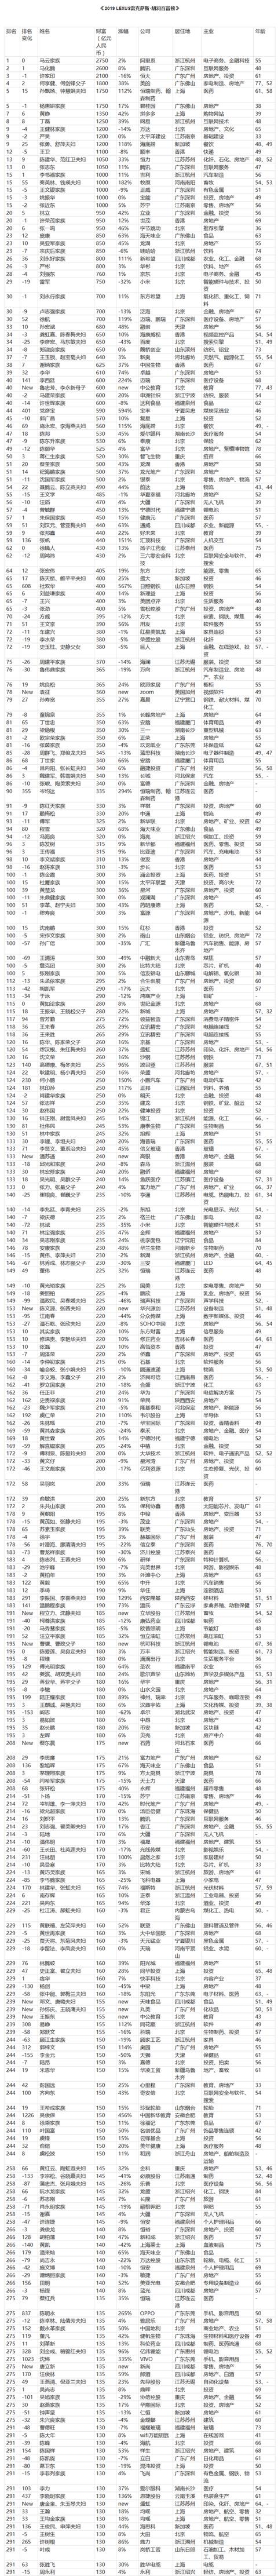 中国首富2019_最新中国首富十大排名出炉(定期